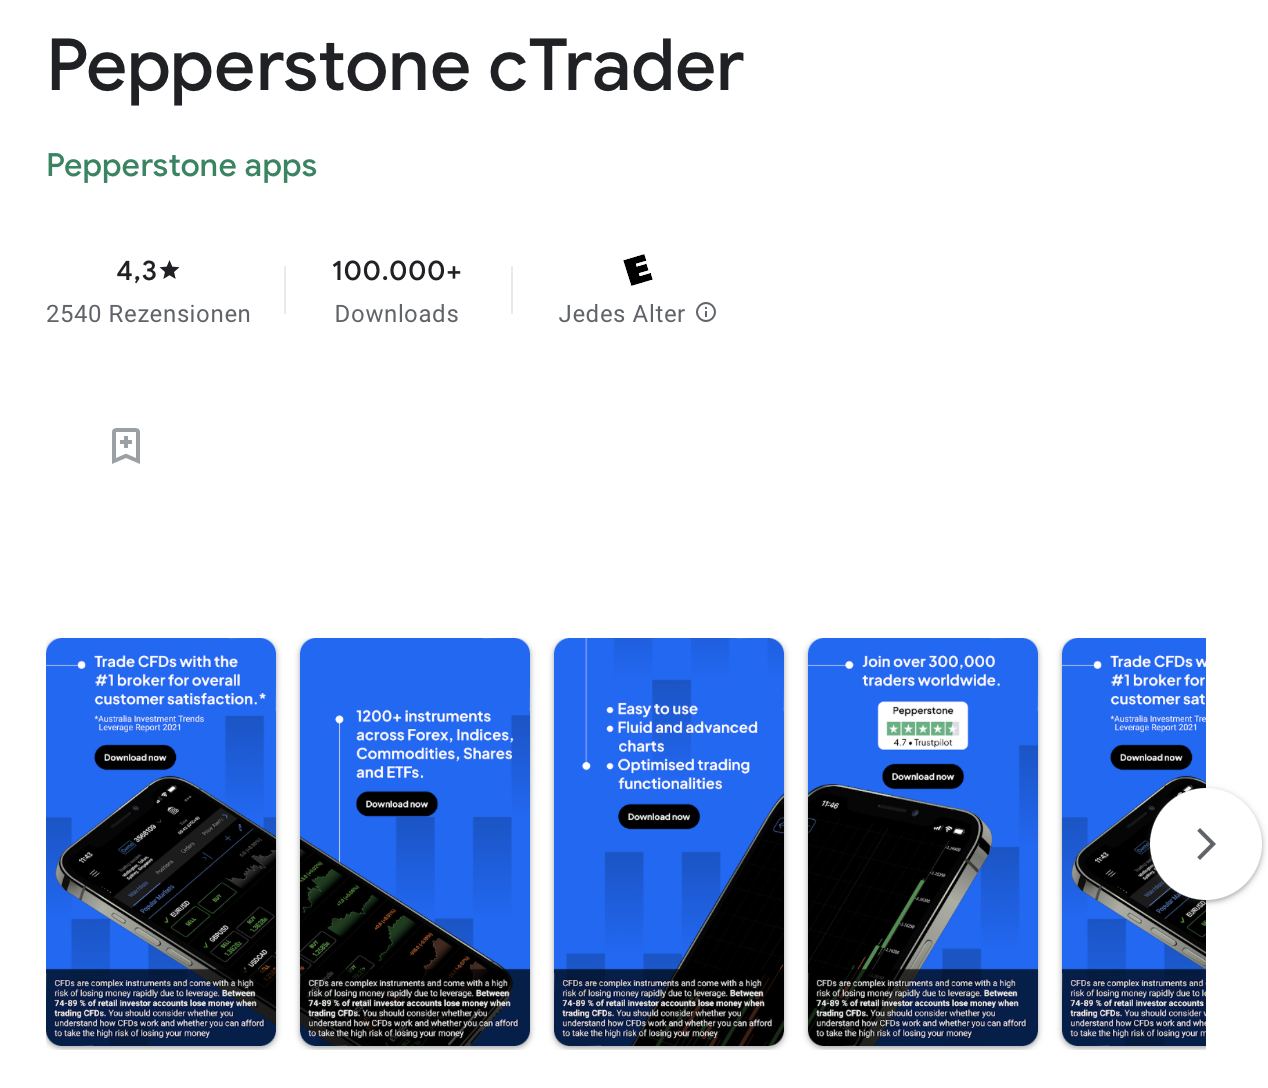 Pepperstone cTrader letöltése a Google Play Áruházból